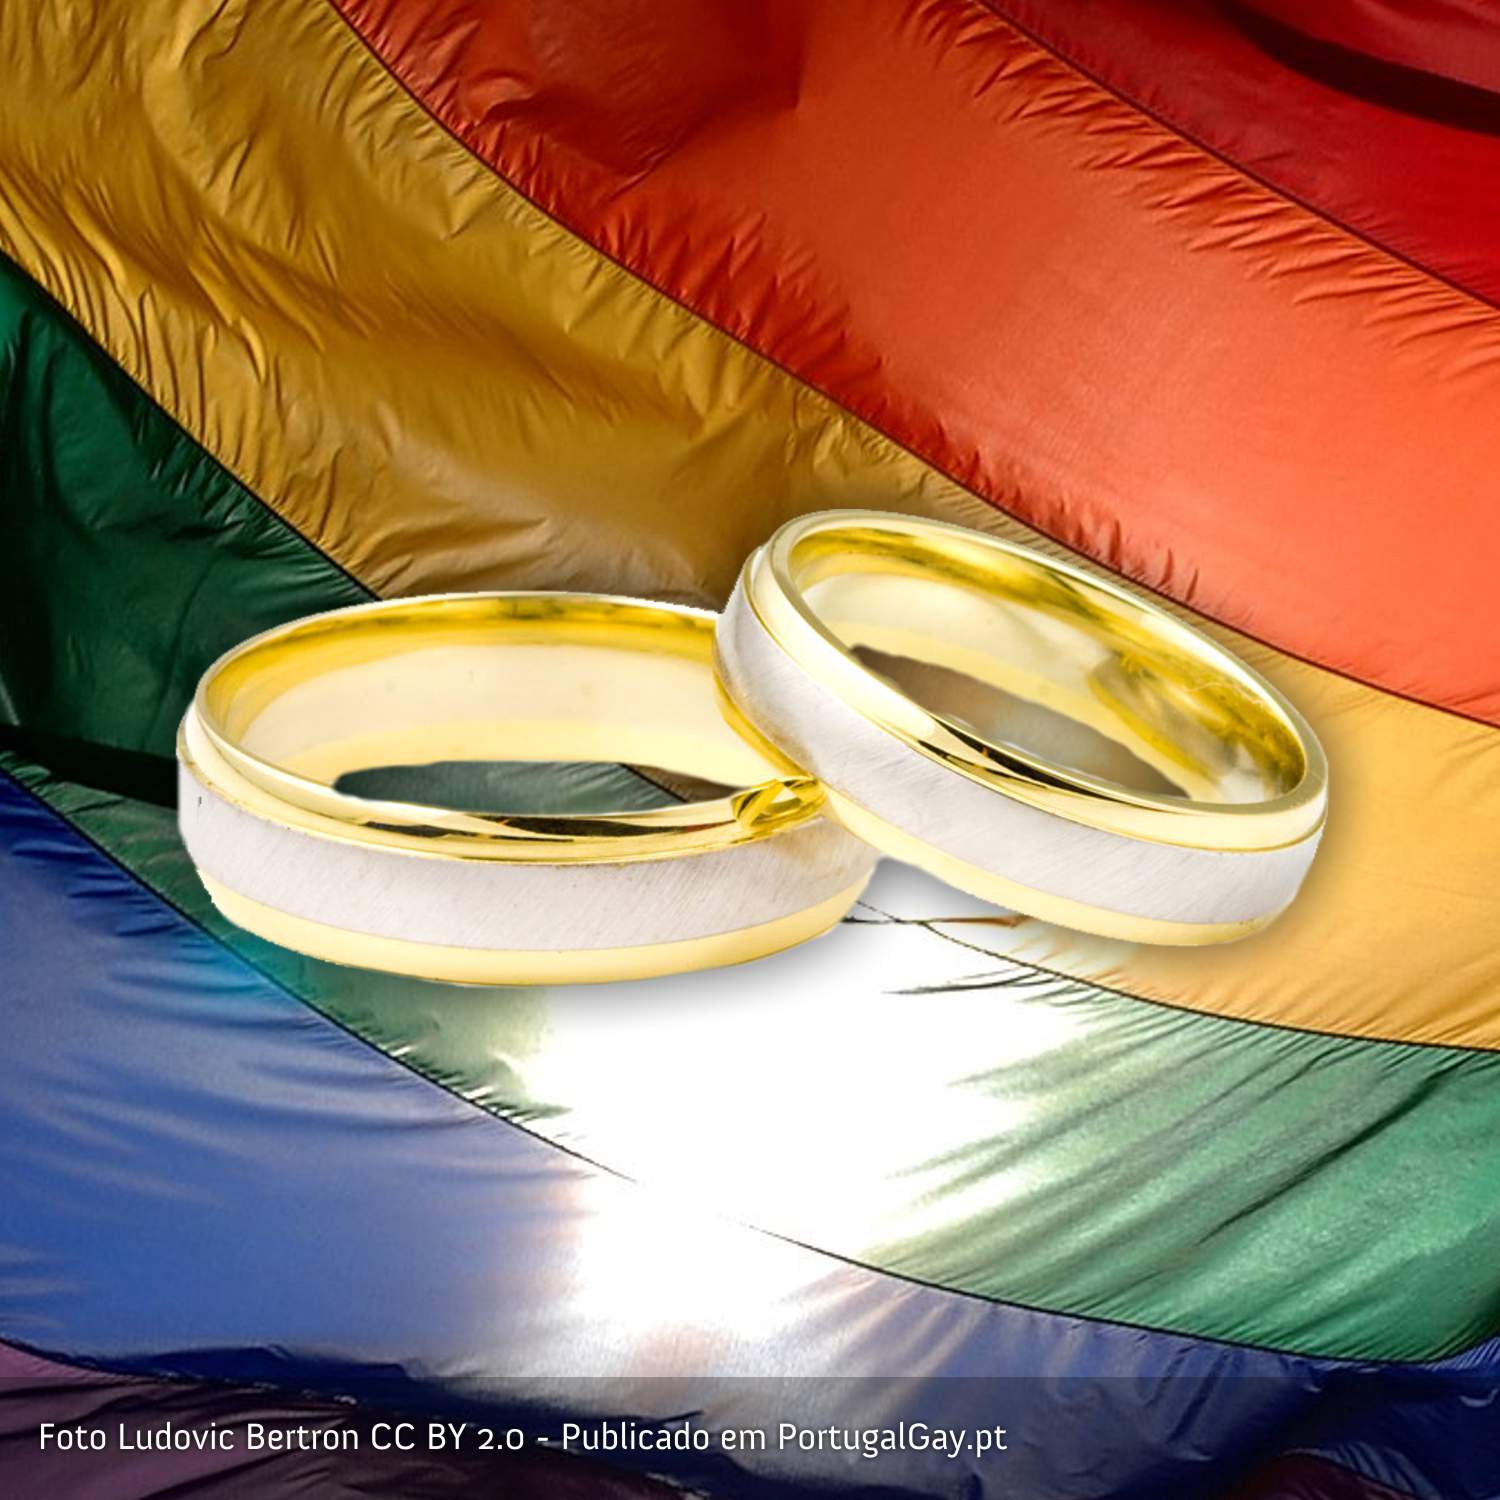 USTRIA: Supremo legaliza casamento entre pessoas do mesmo sexo